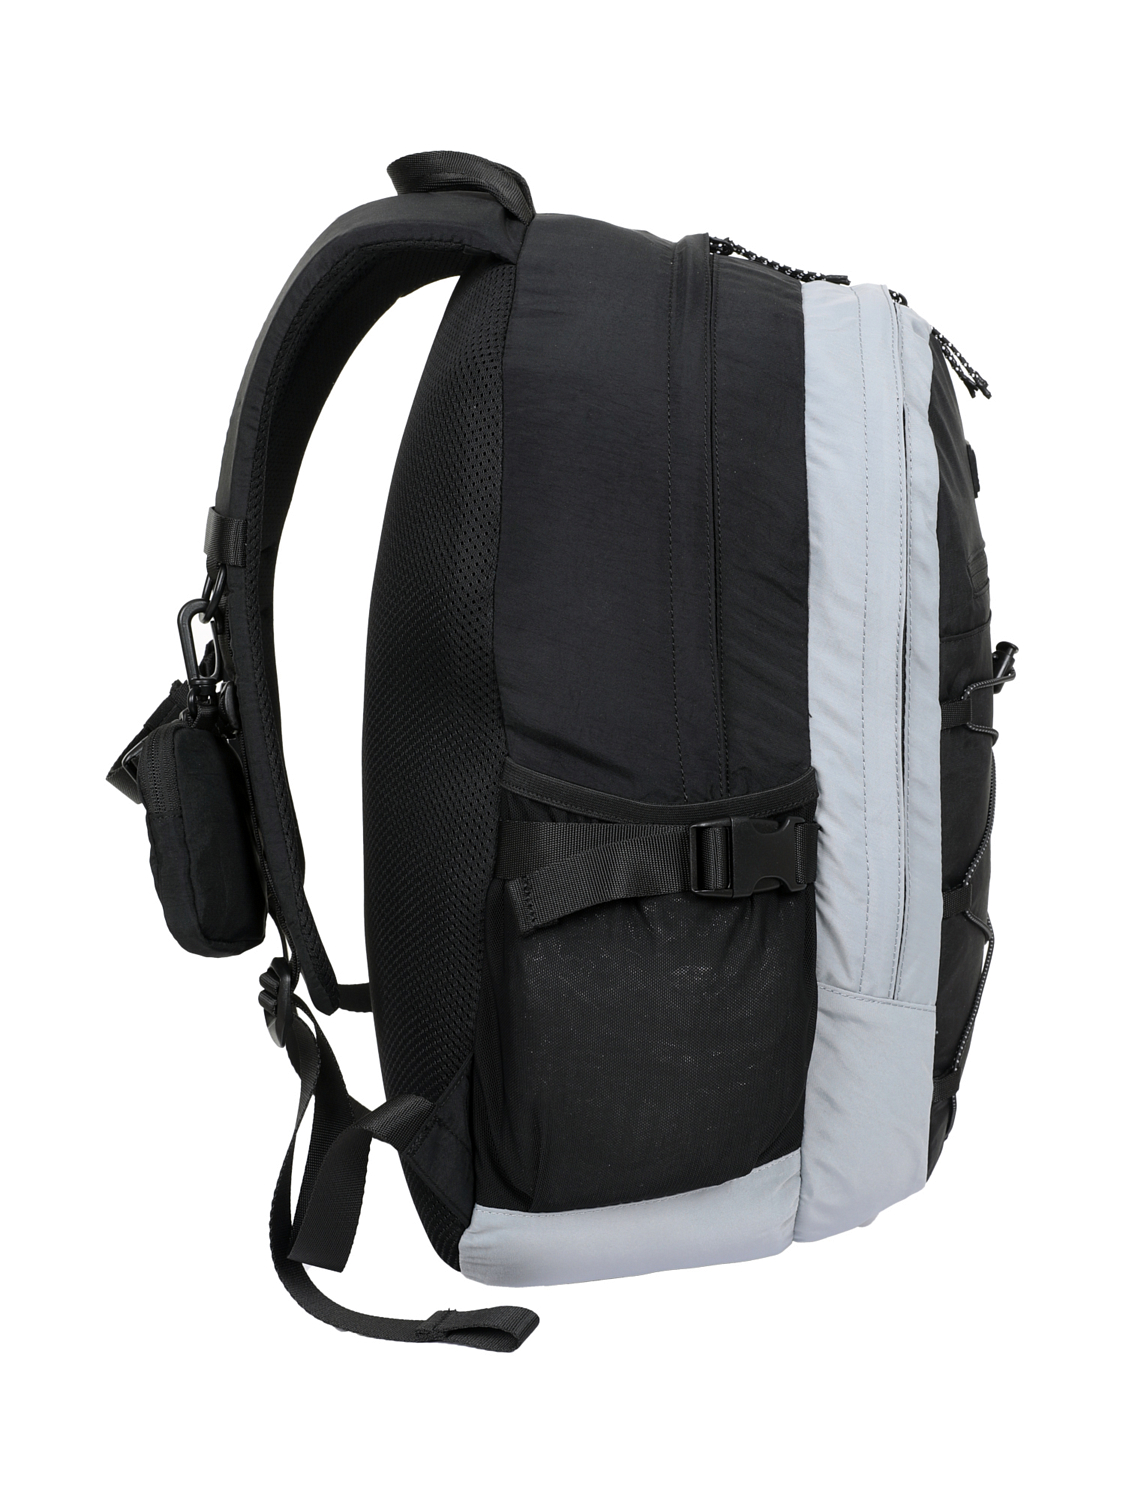 Рюкзак Toread 30L Backpack Black/Grey